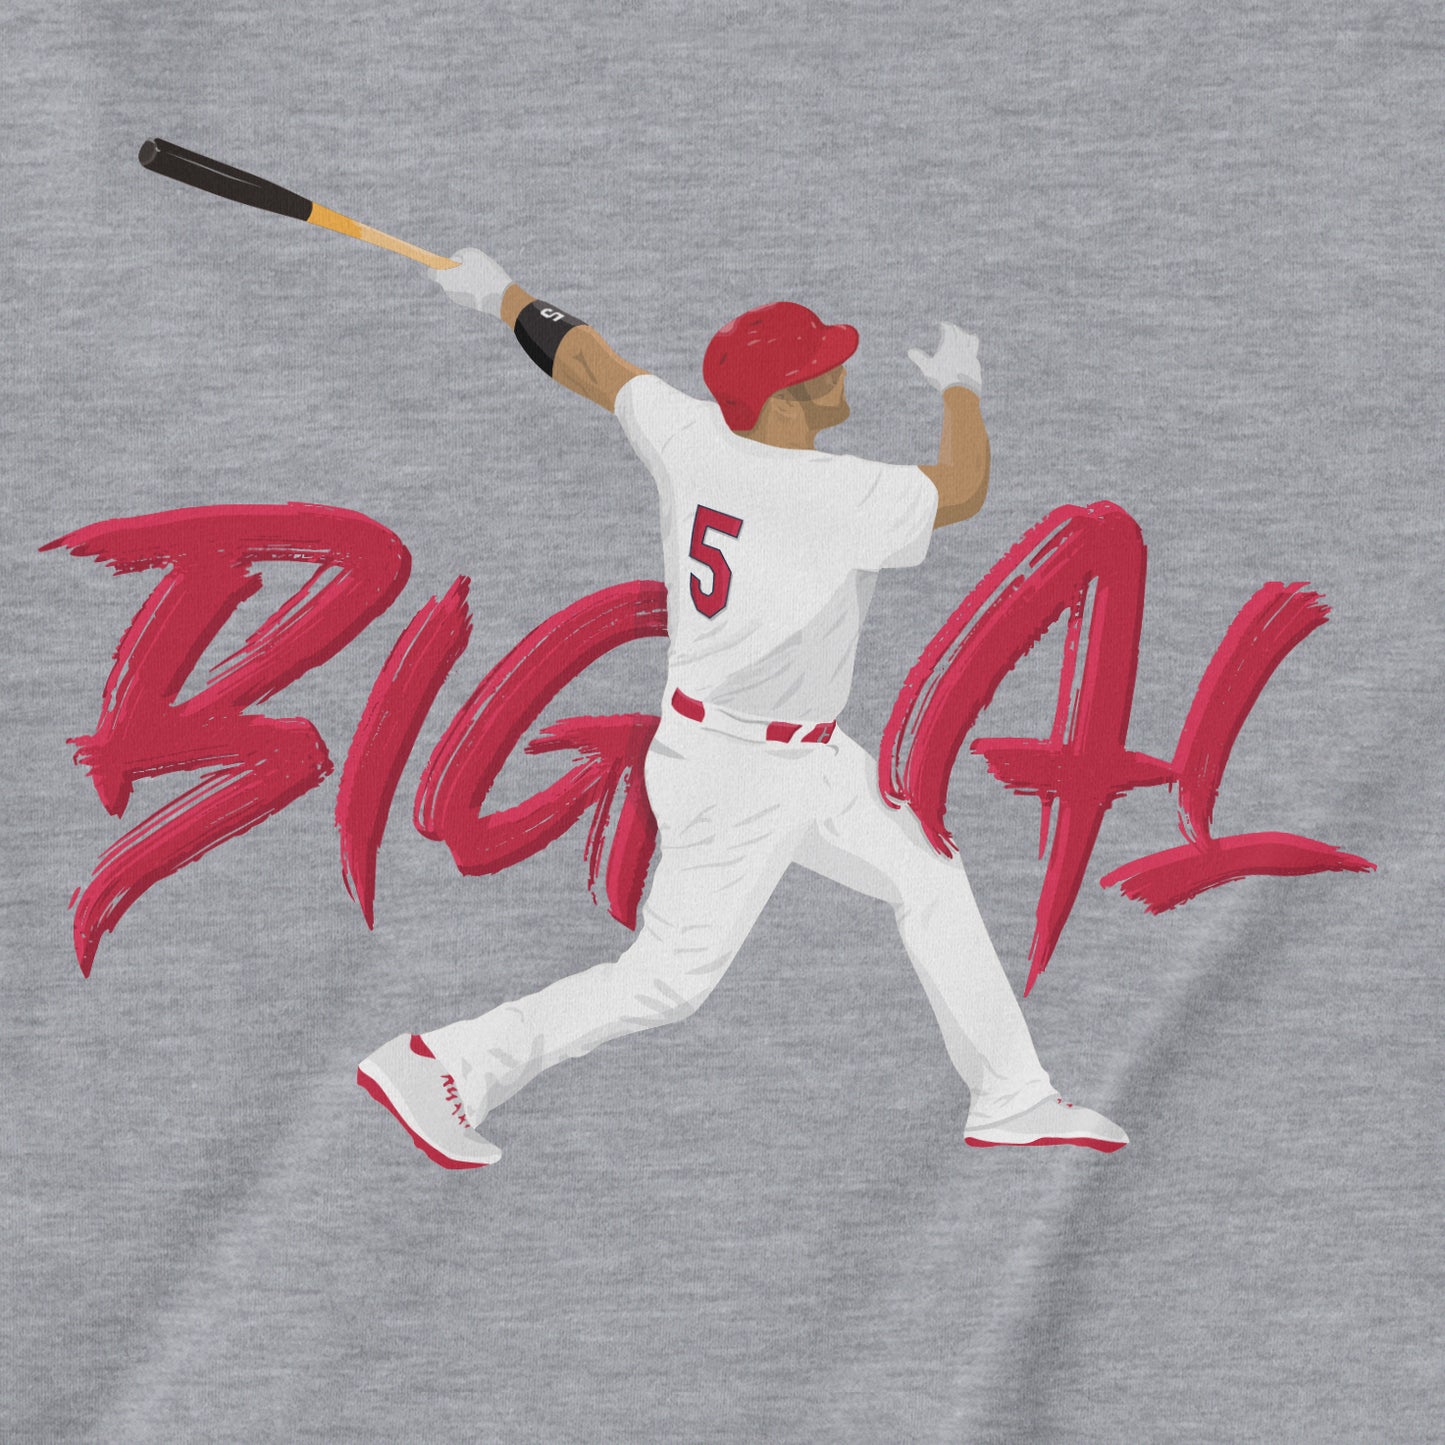 Big Al | T-Shirt